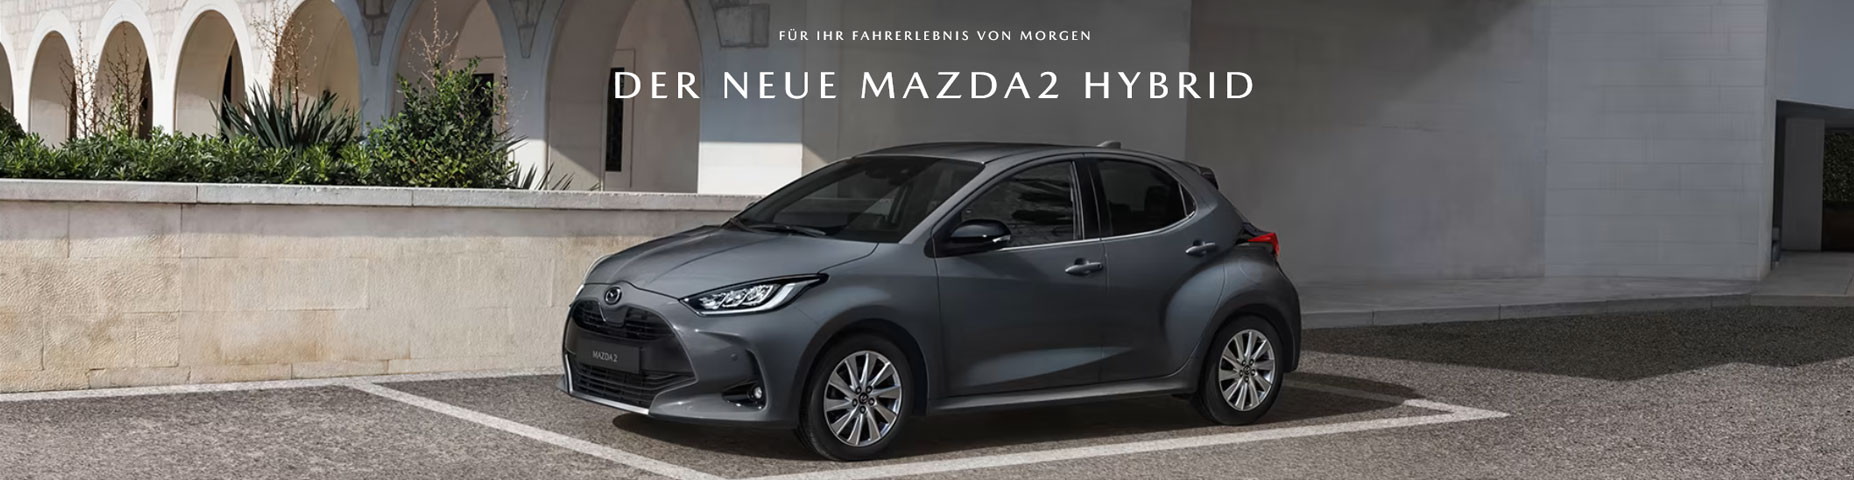 Der neue Mazda 2 Hybrid